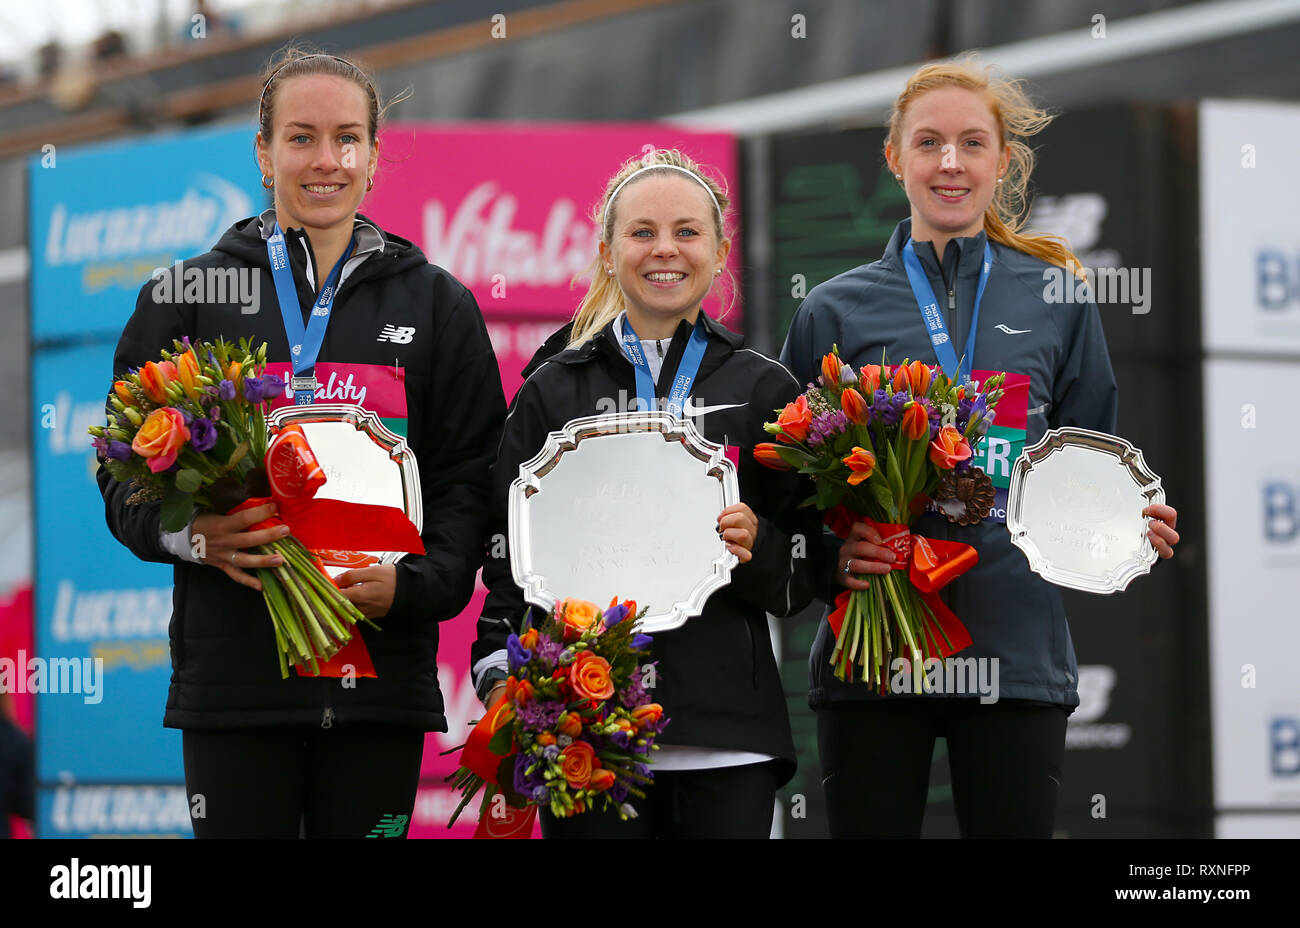 Charlotte Purdue, vainqueur de la course des femmes (centre), avec Charlotte Arter en troisième (à droite) et Beth Twell en deuxième au cours de l'épanouissement demi à Londres. Banque D'Images